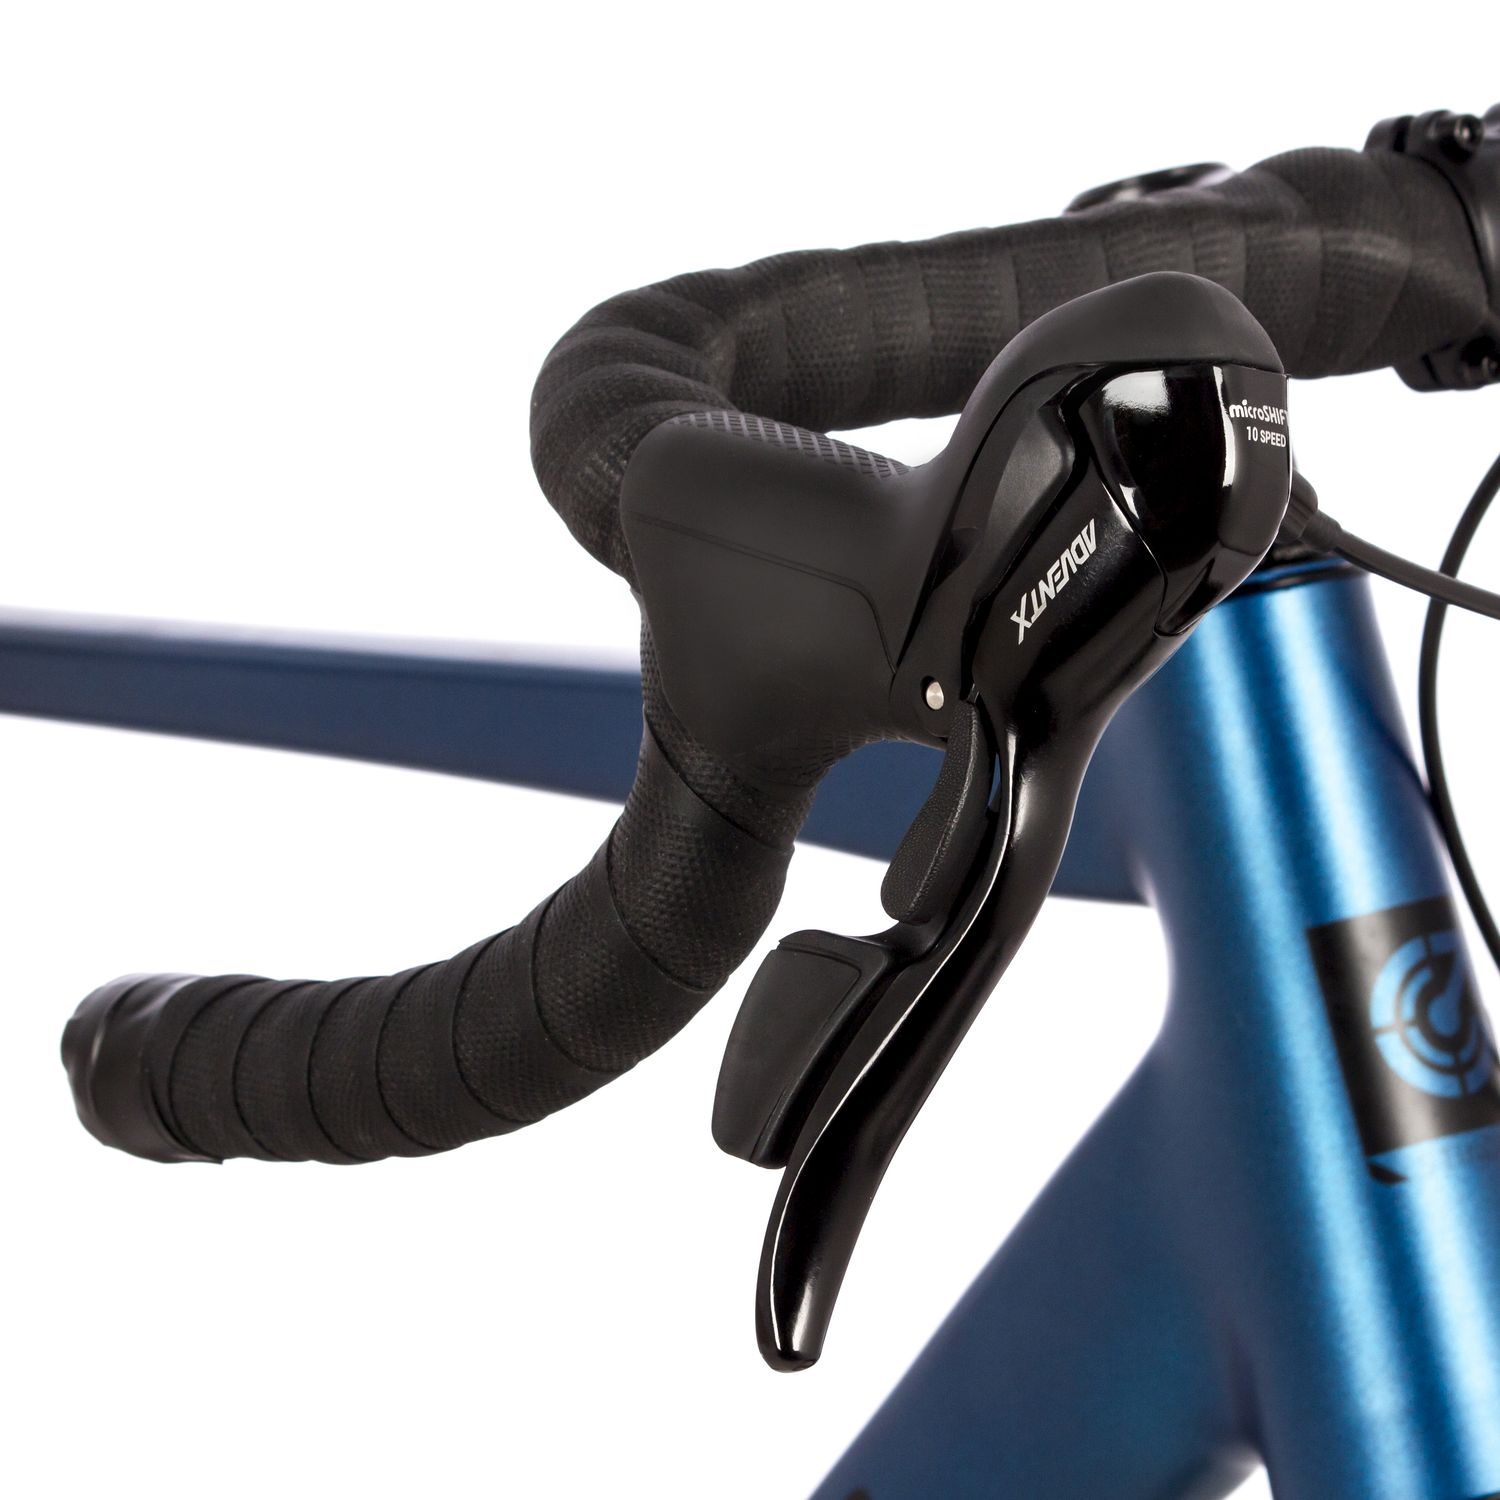 Шоссейный велосипед Stinger Gravix Evo, год 2023, цвет Синий, ростовка 19.5